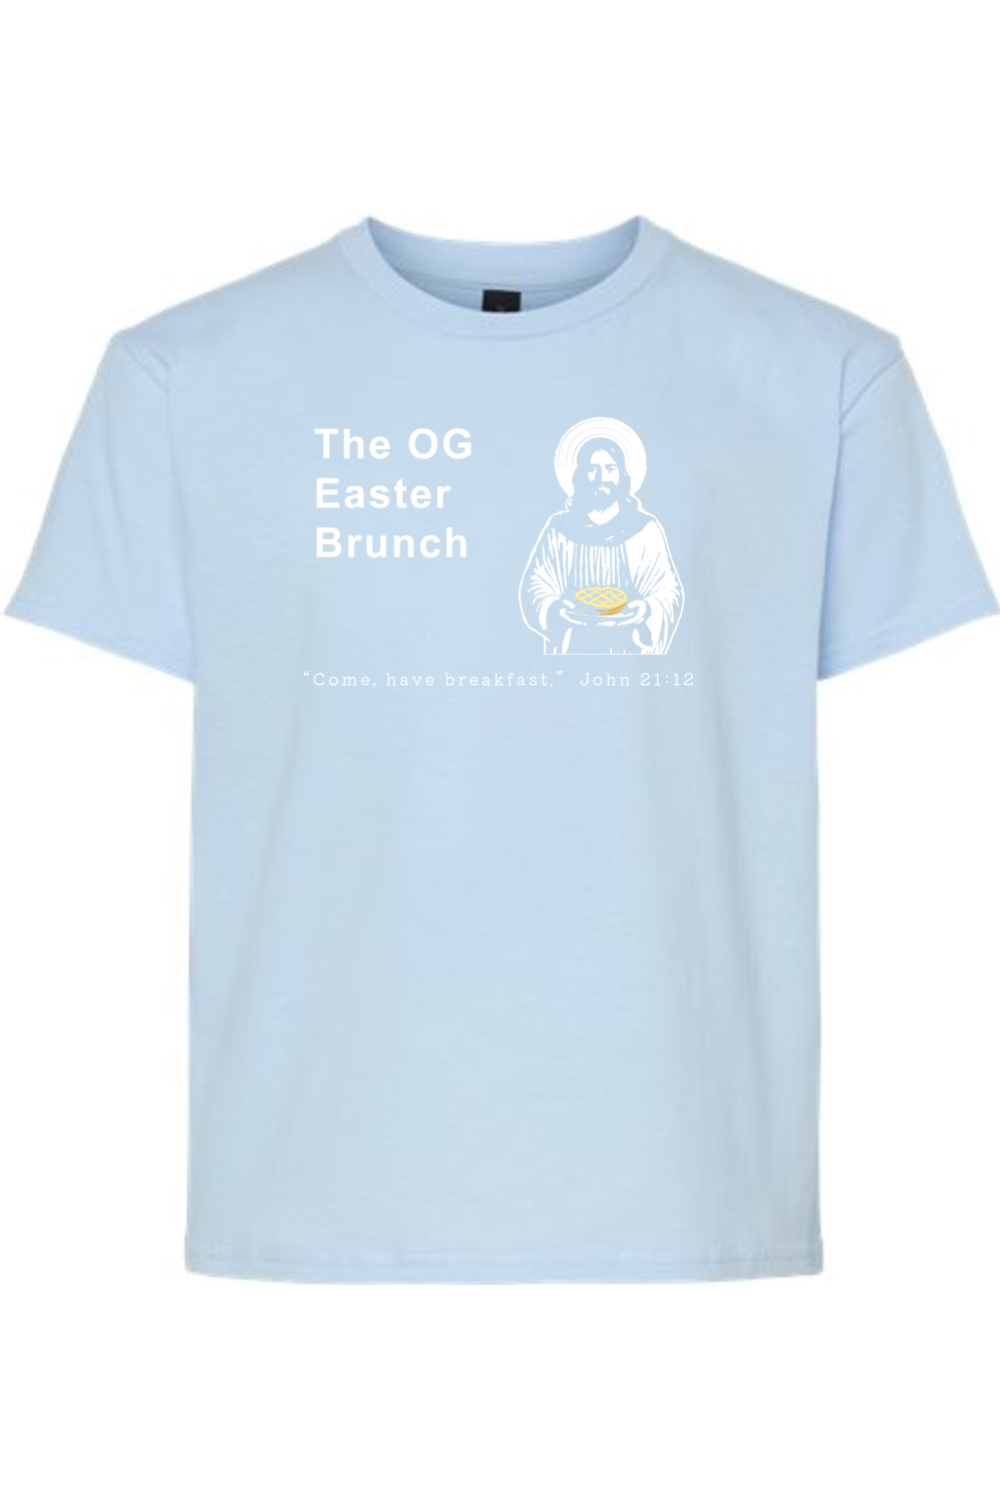 The OG Easter Brunch - John 21:12 Youth T-Shirt